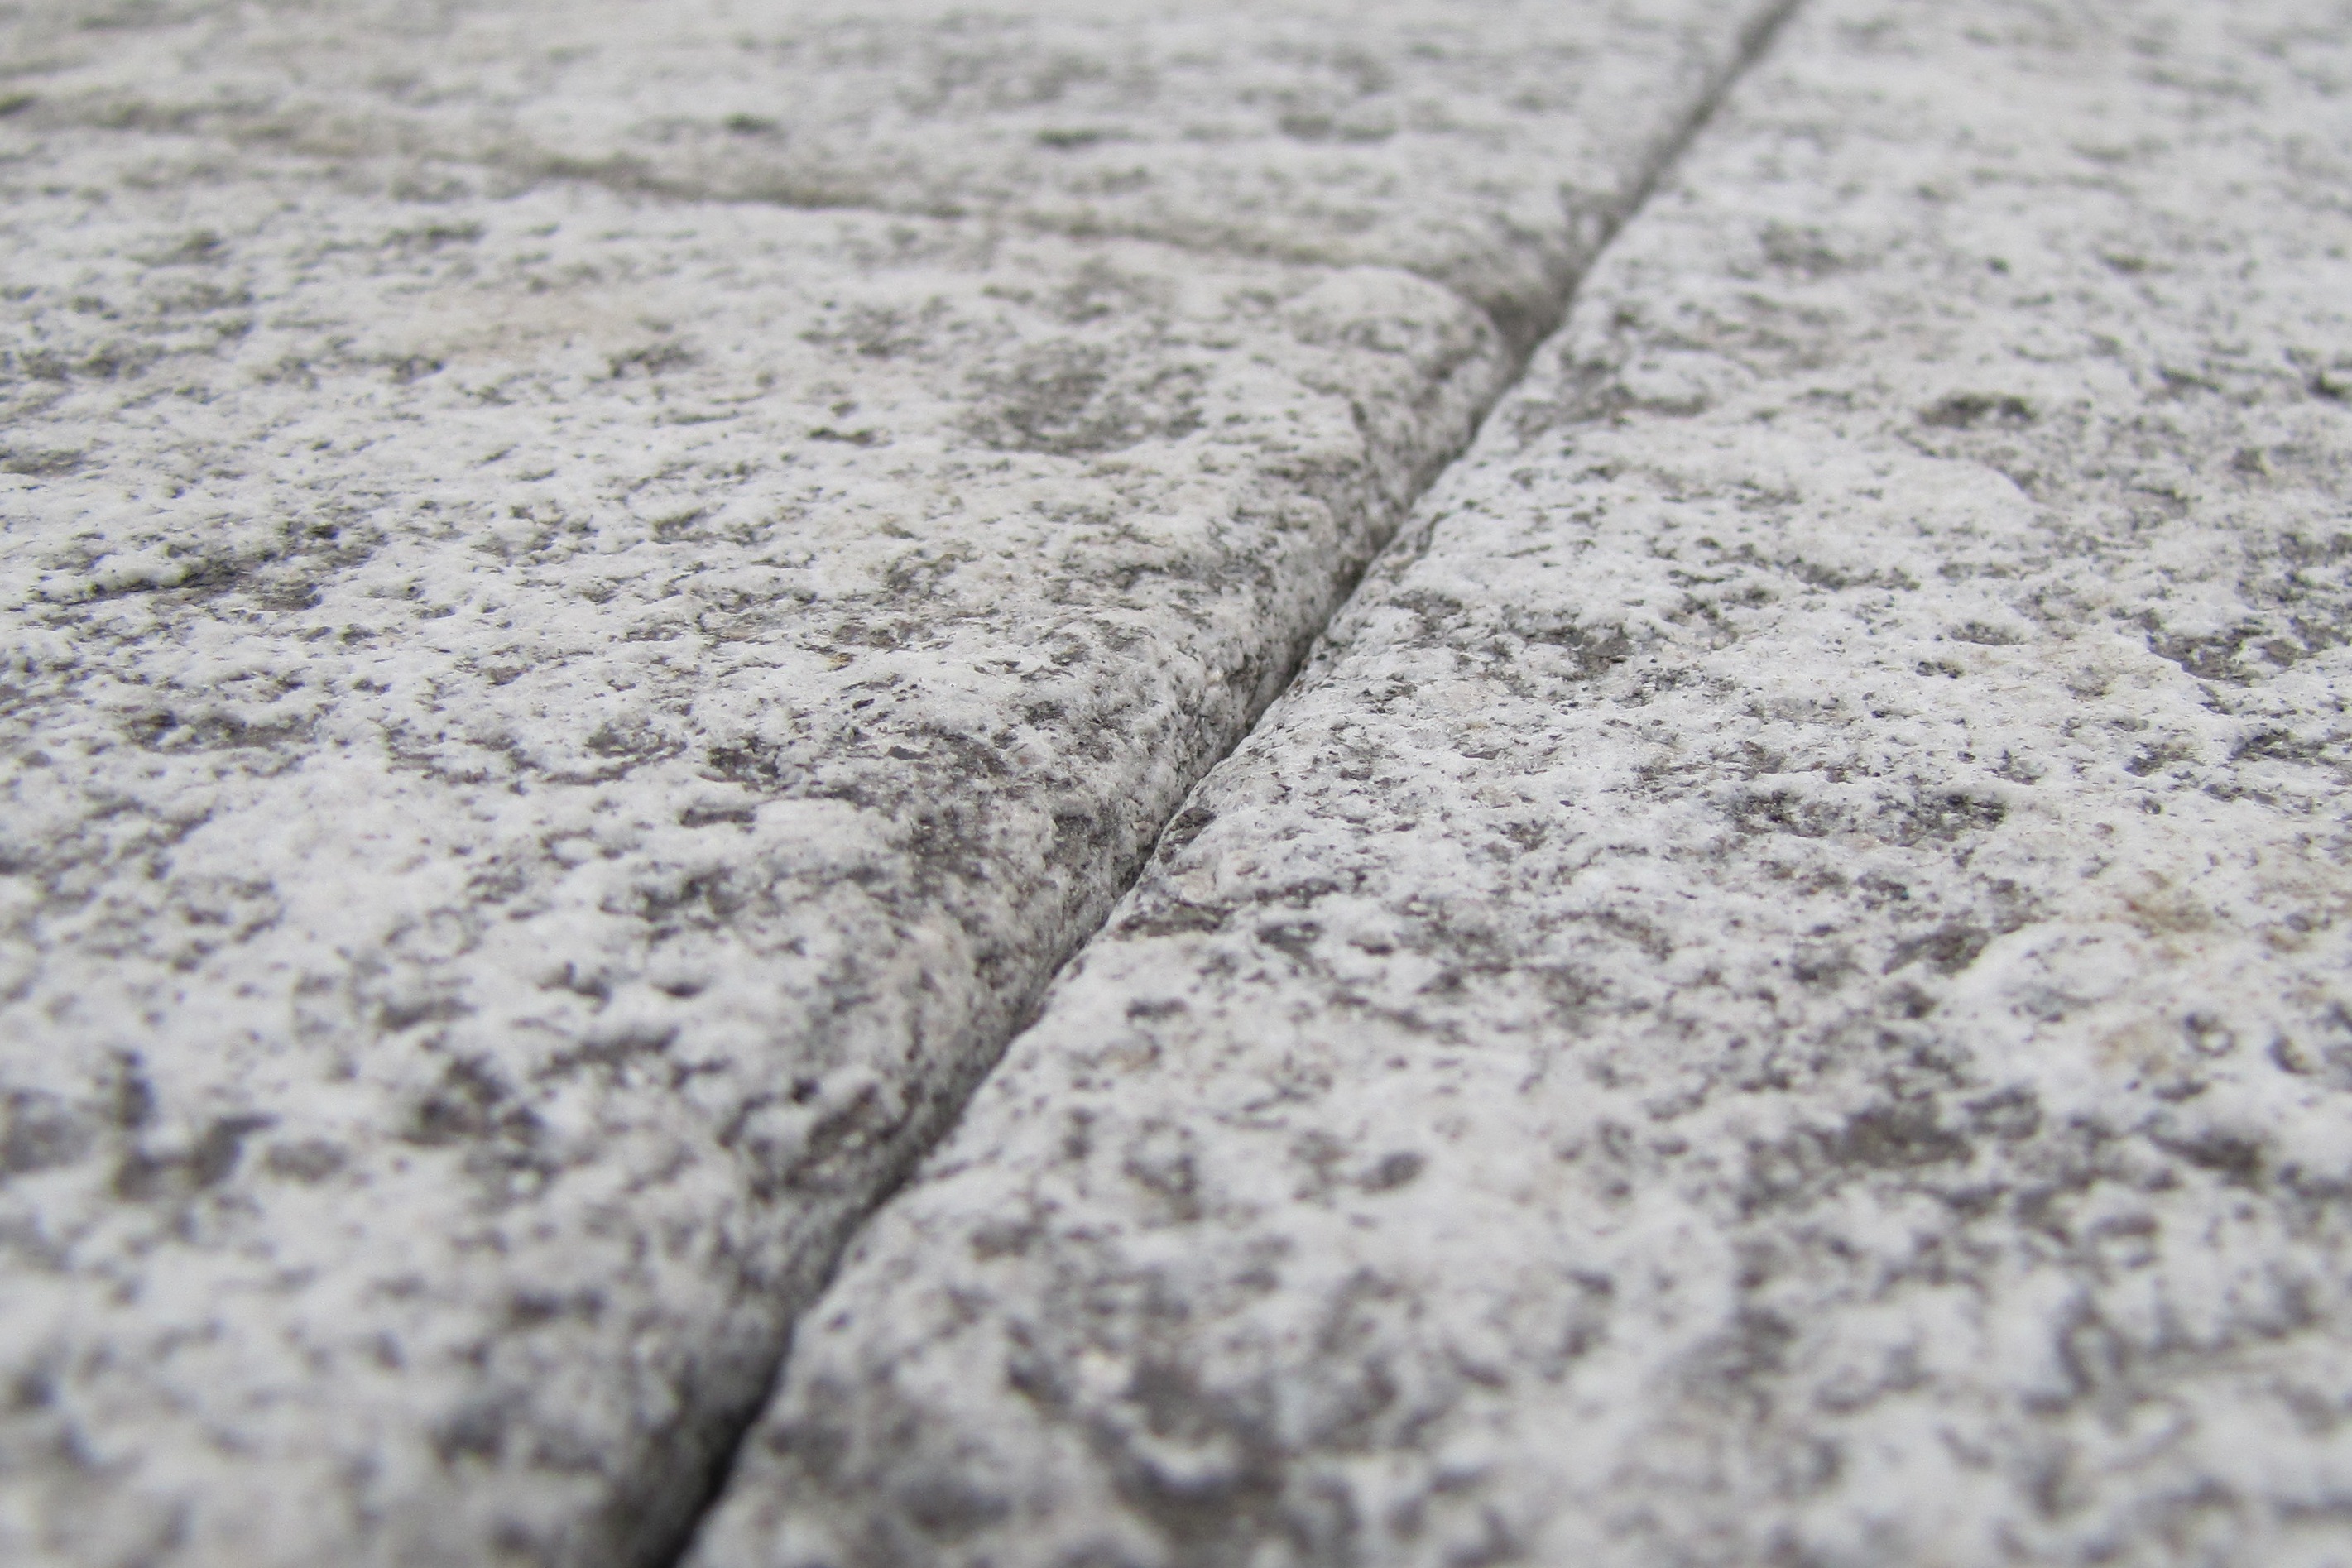 Ramella Graniti Pavimneto rettangolare